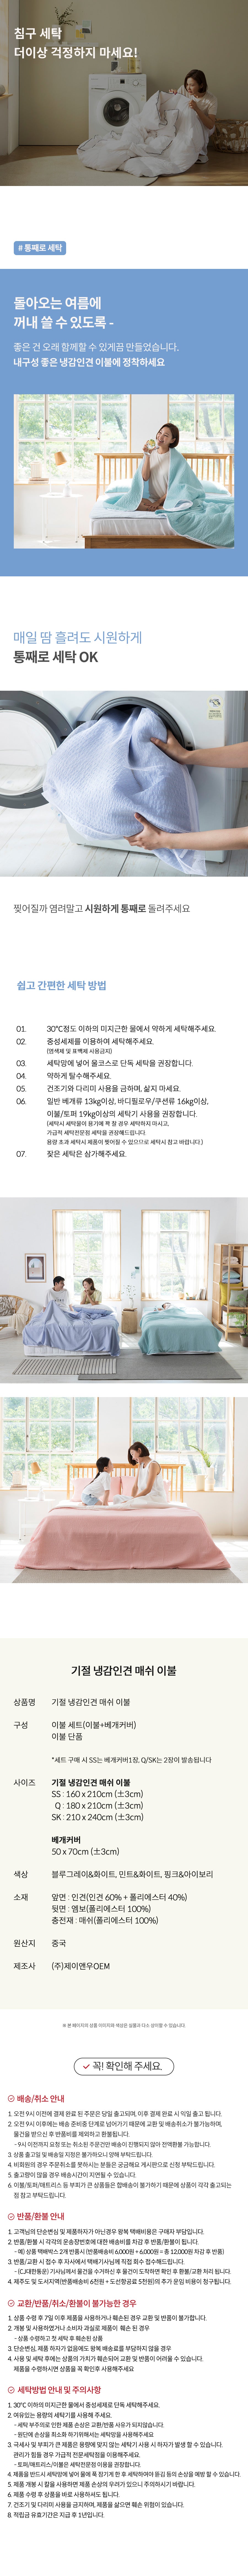 숨쉬는 기절 인견 이불세트 Breathable rayon quilt kigeol bedding for Summer